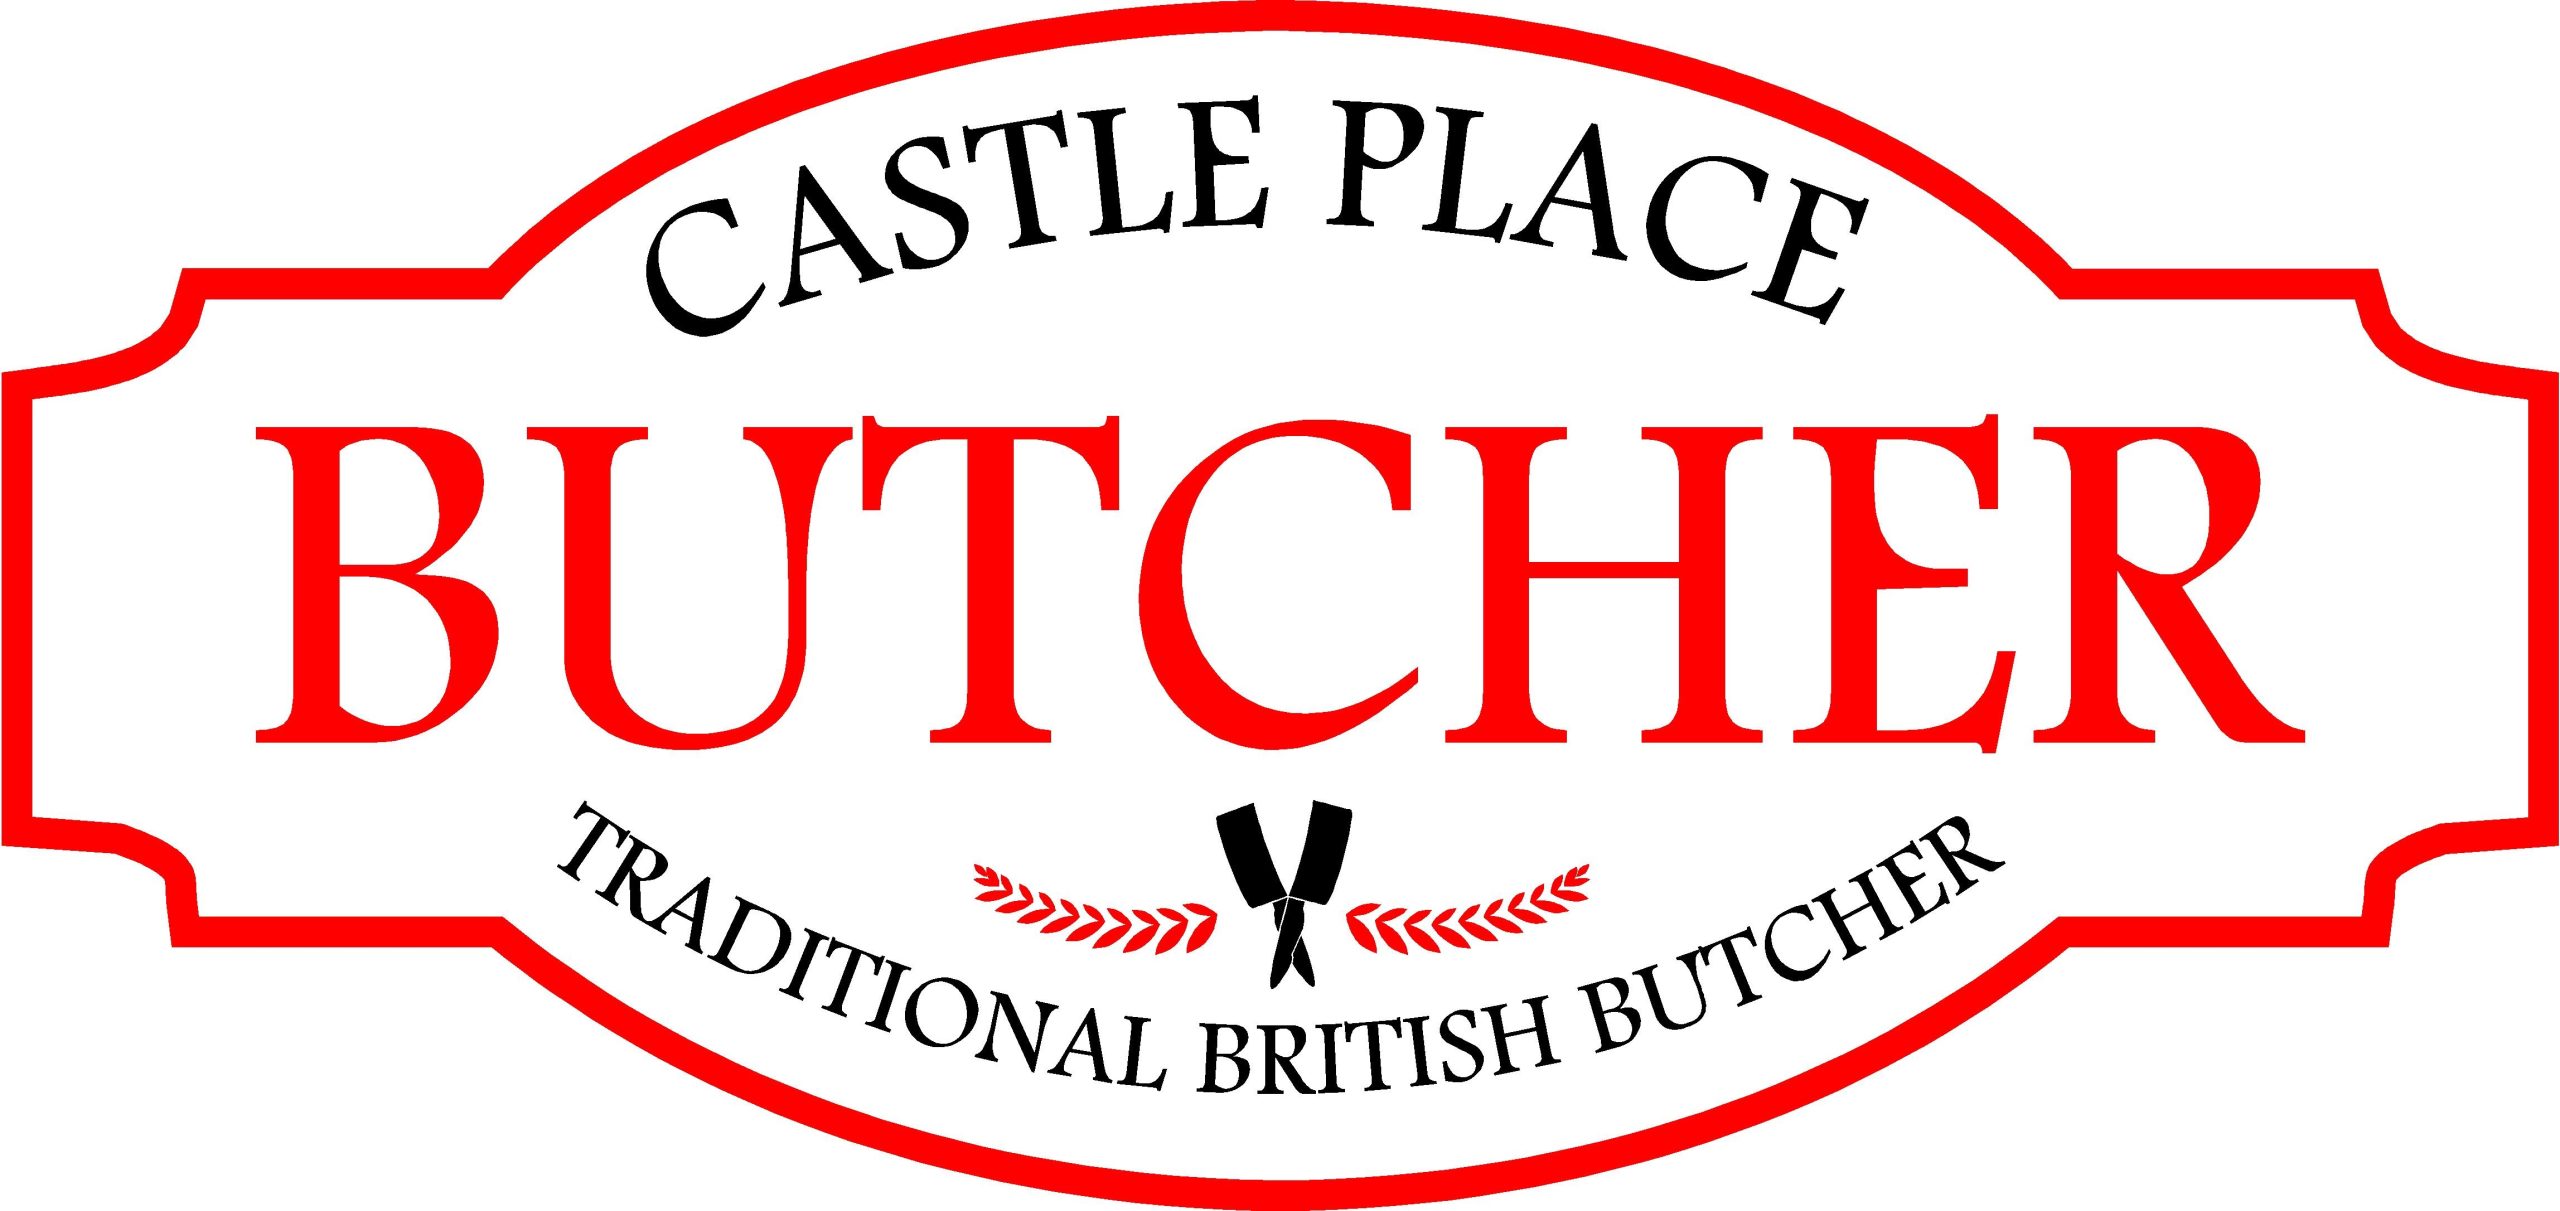 Castle Place Butchers